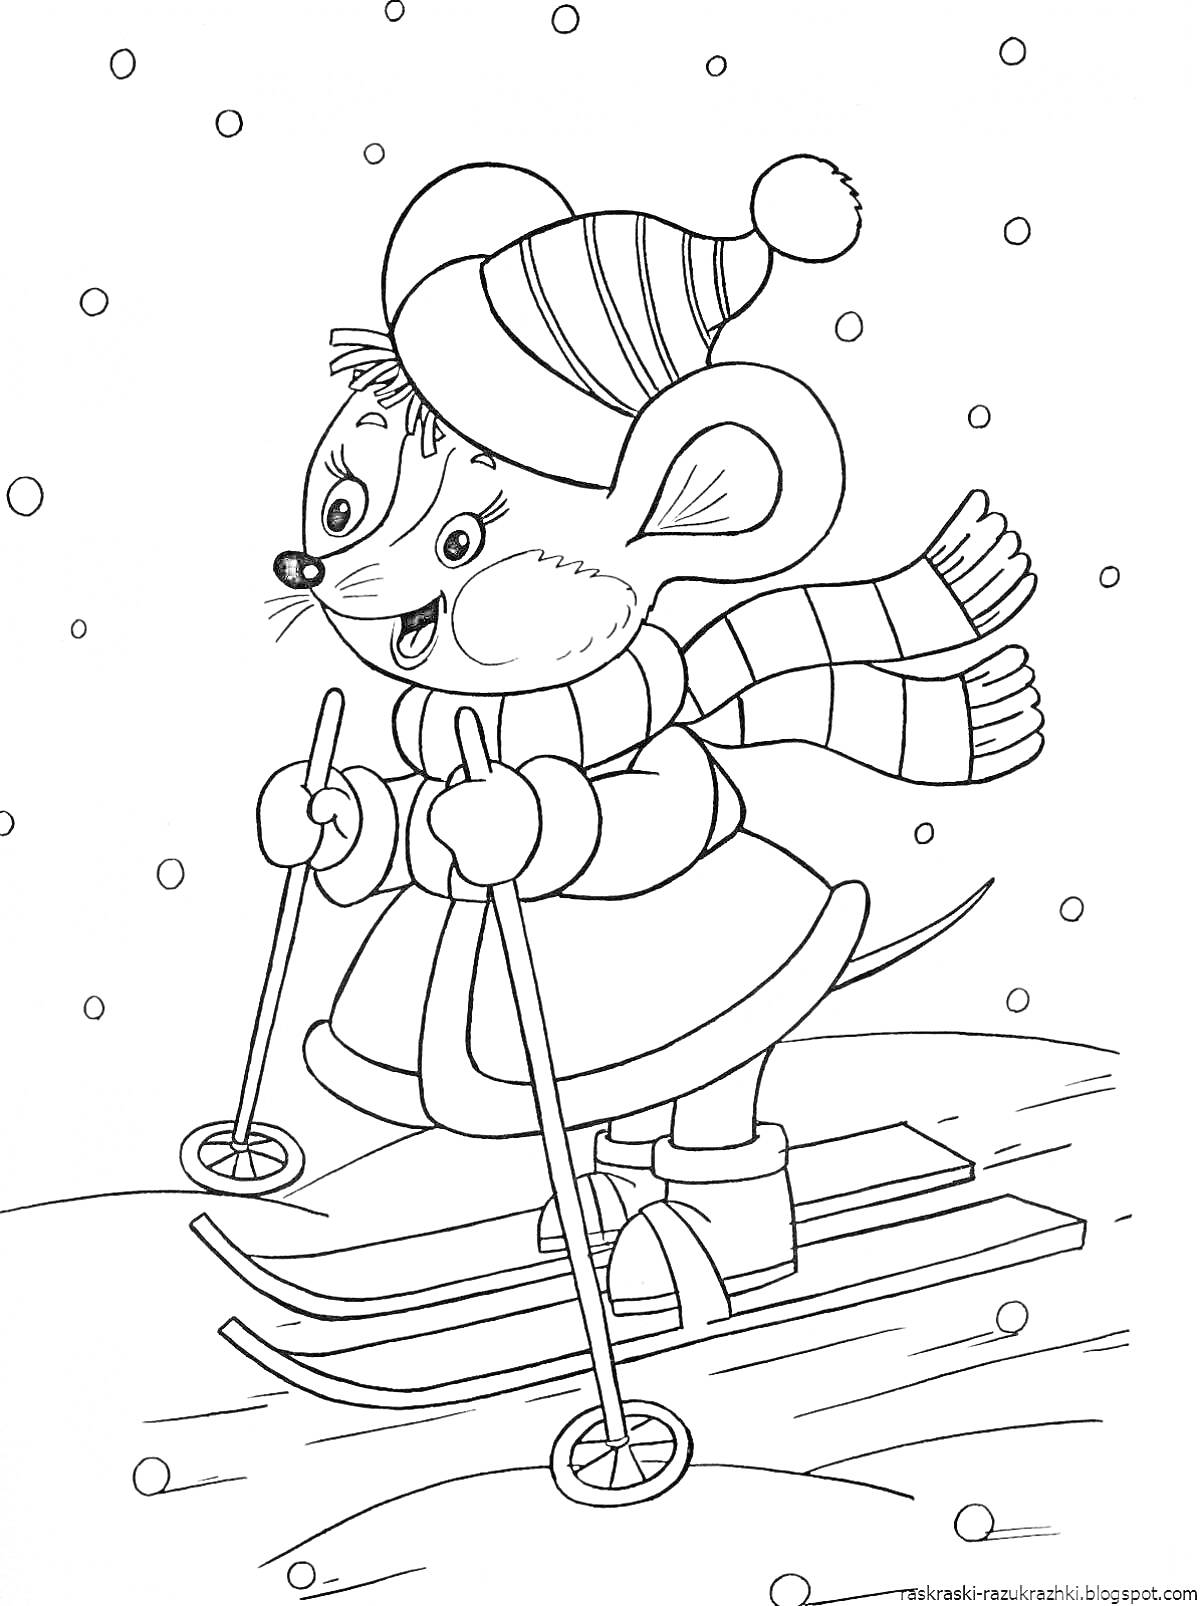 Раскраска Мышонок на лыжах в зимней одежде на фоне падающего снега